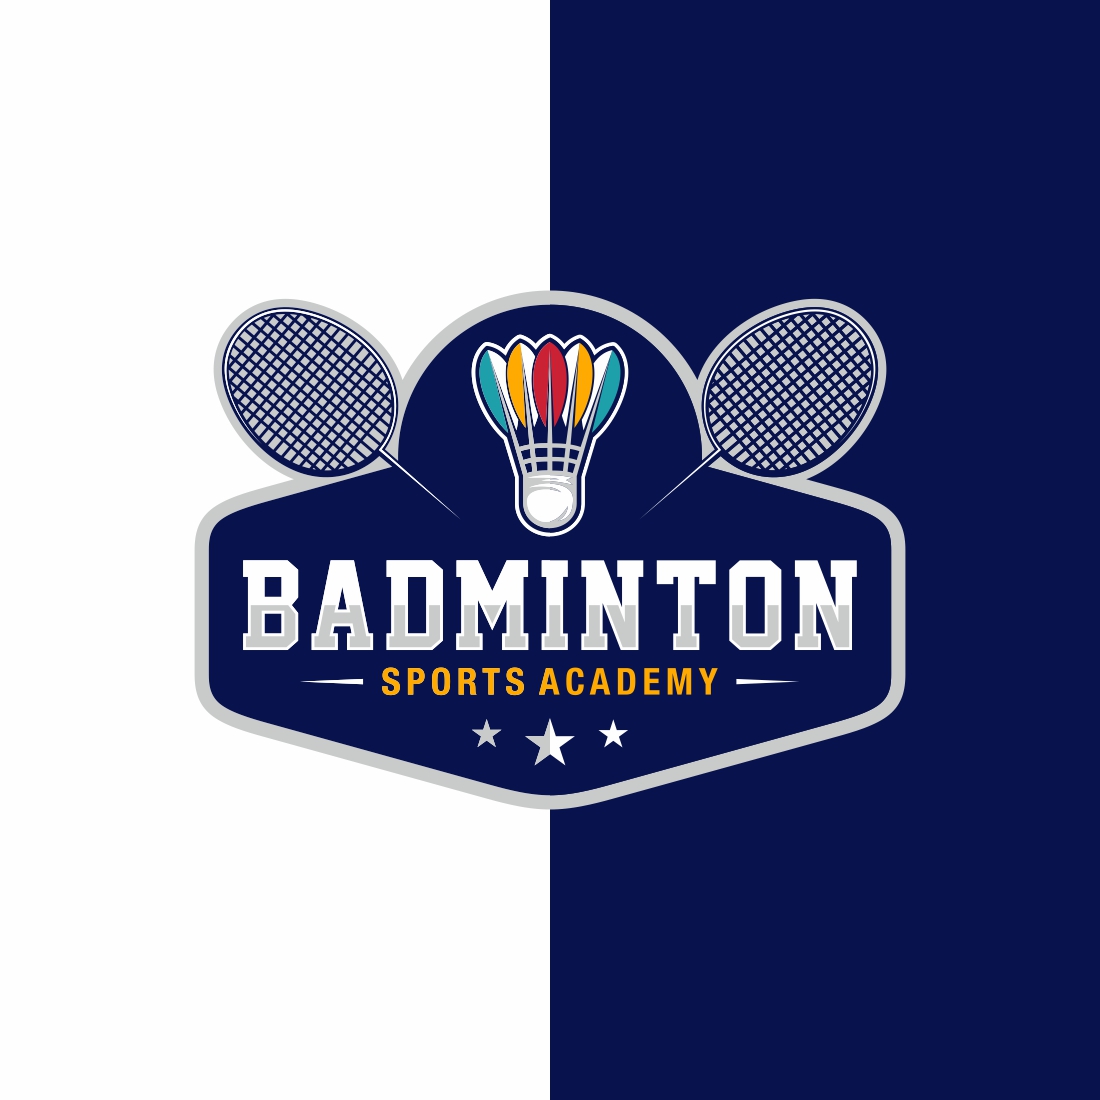 Badminton Logo Design Vector – Only $7 preview image.